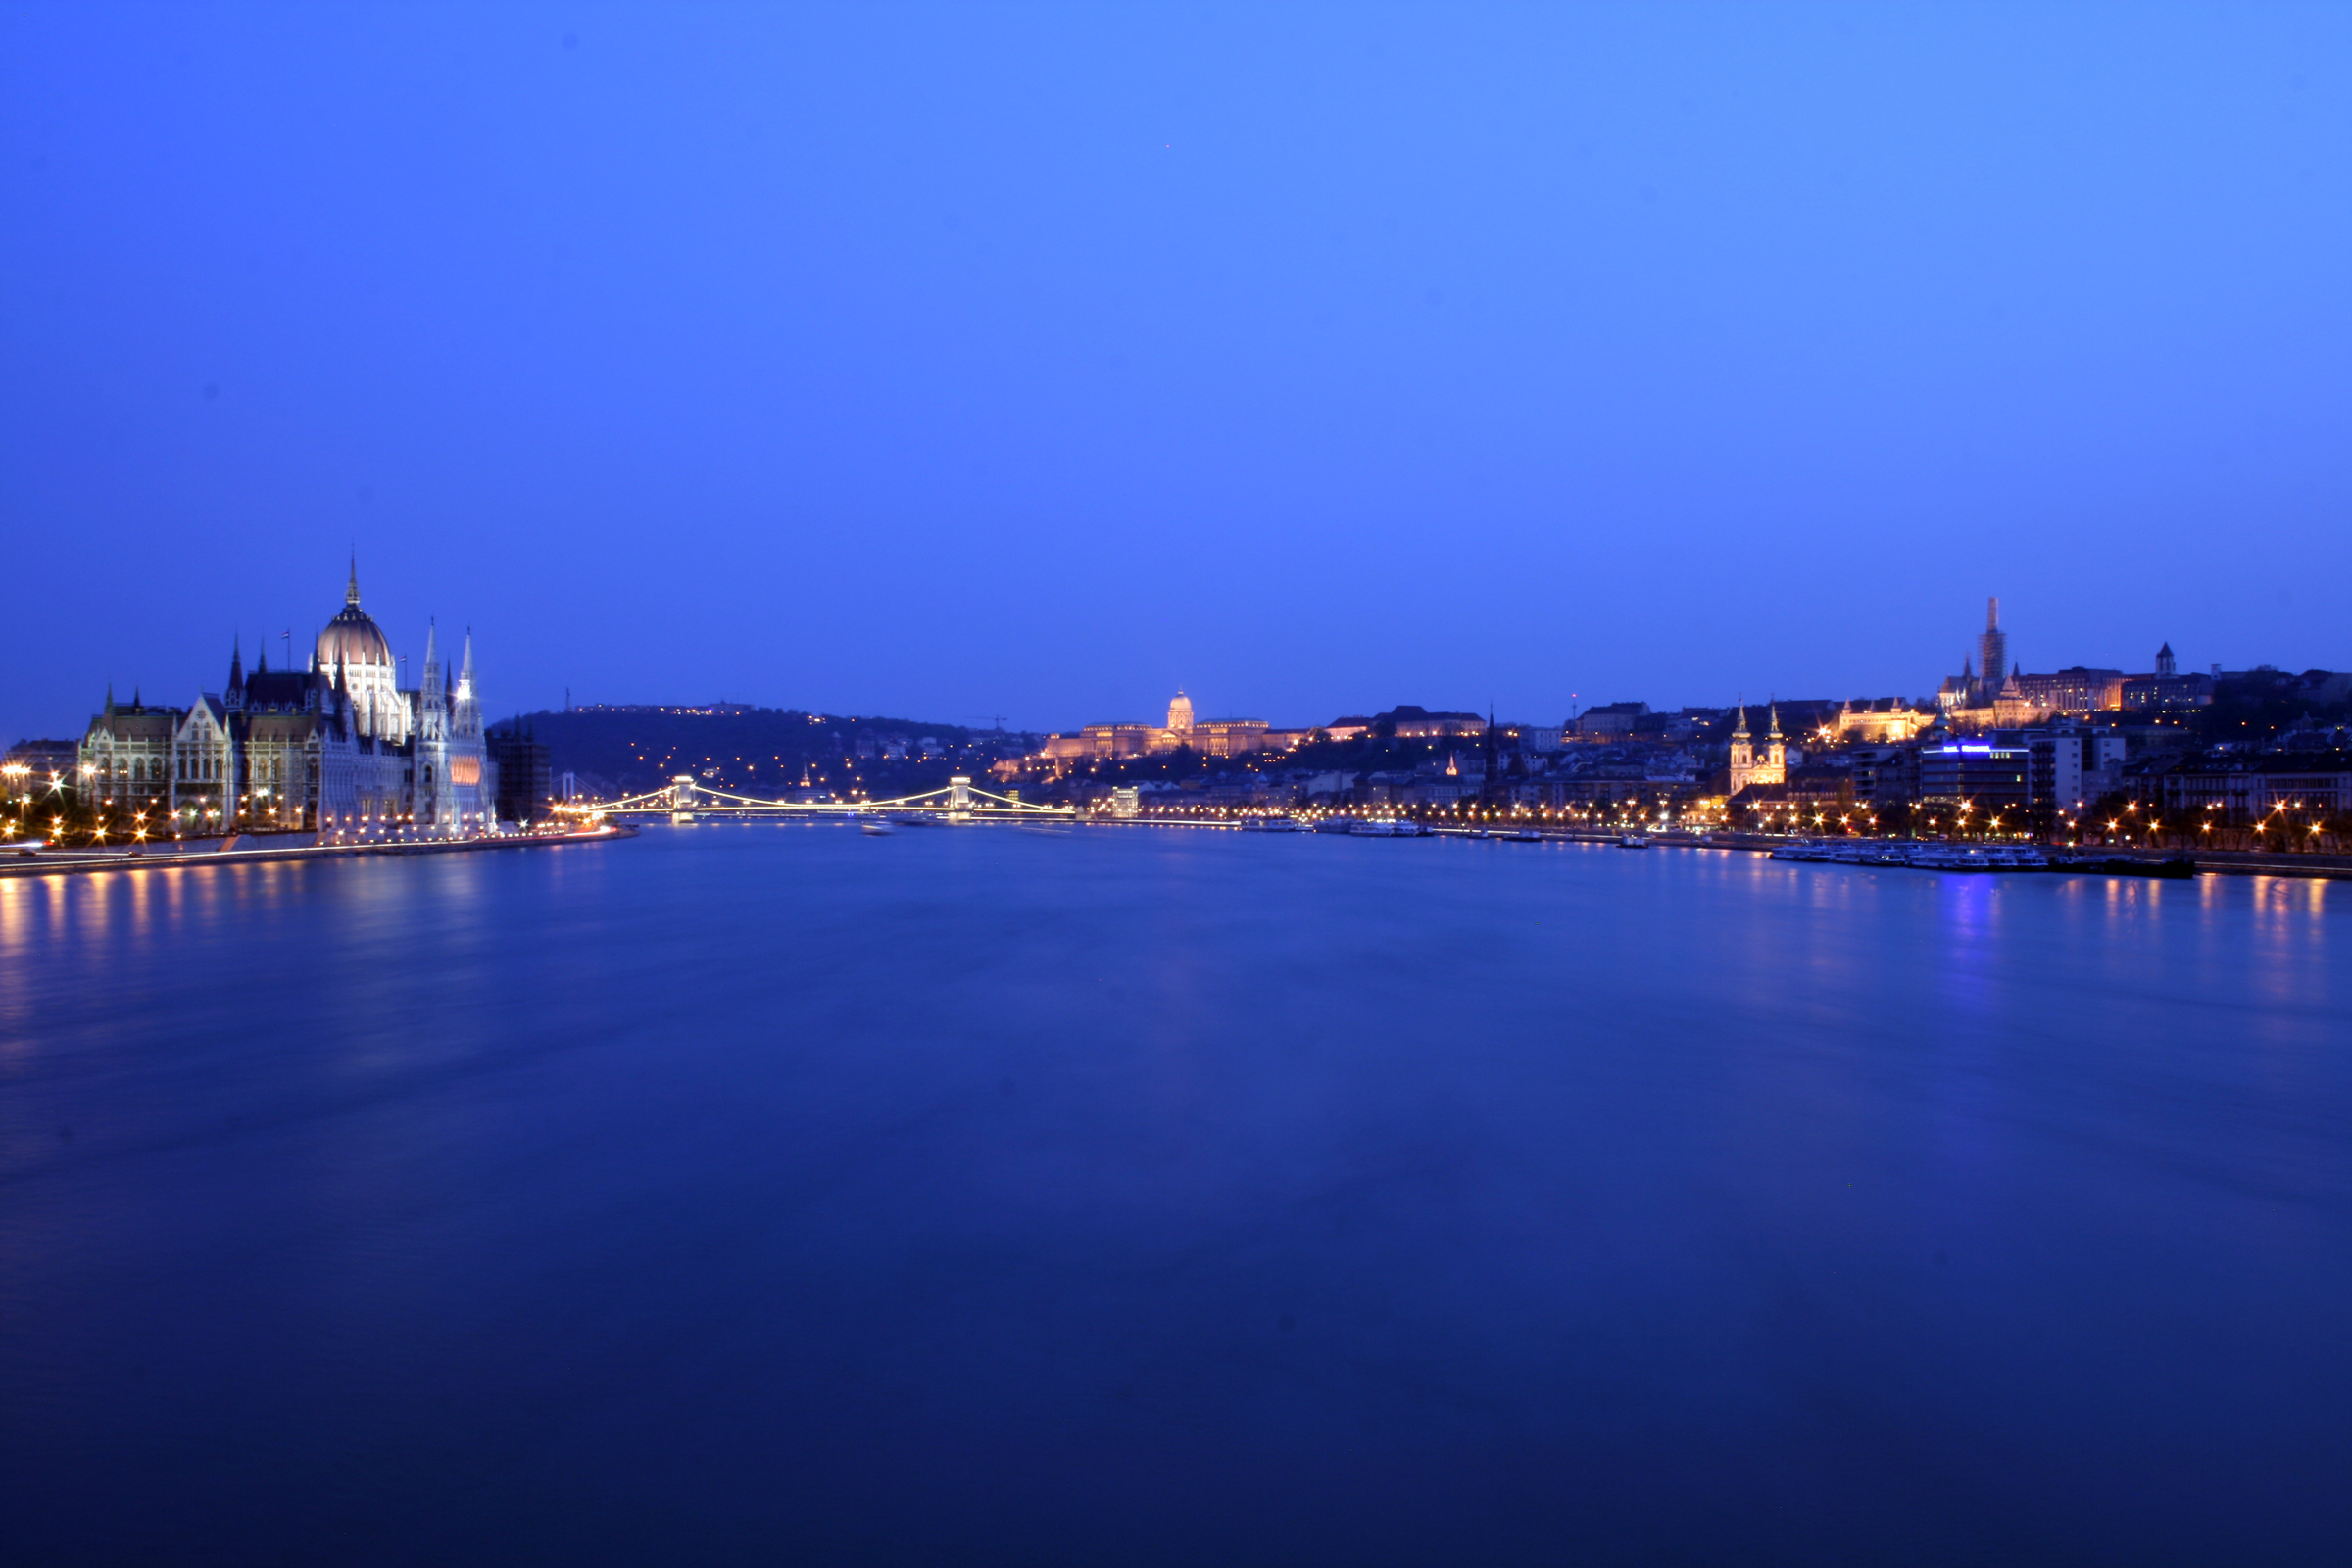 http://upload.wikimedia.org/wikipedia/commons/c/cb/Budapest_Danube_panorama_2.jpg